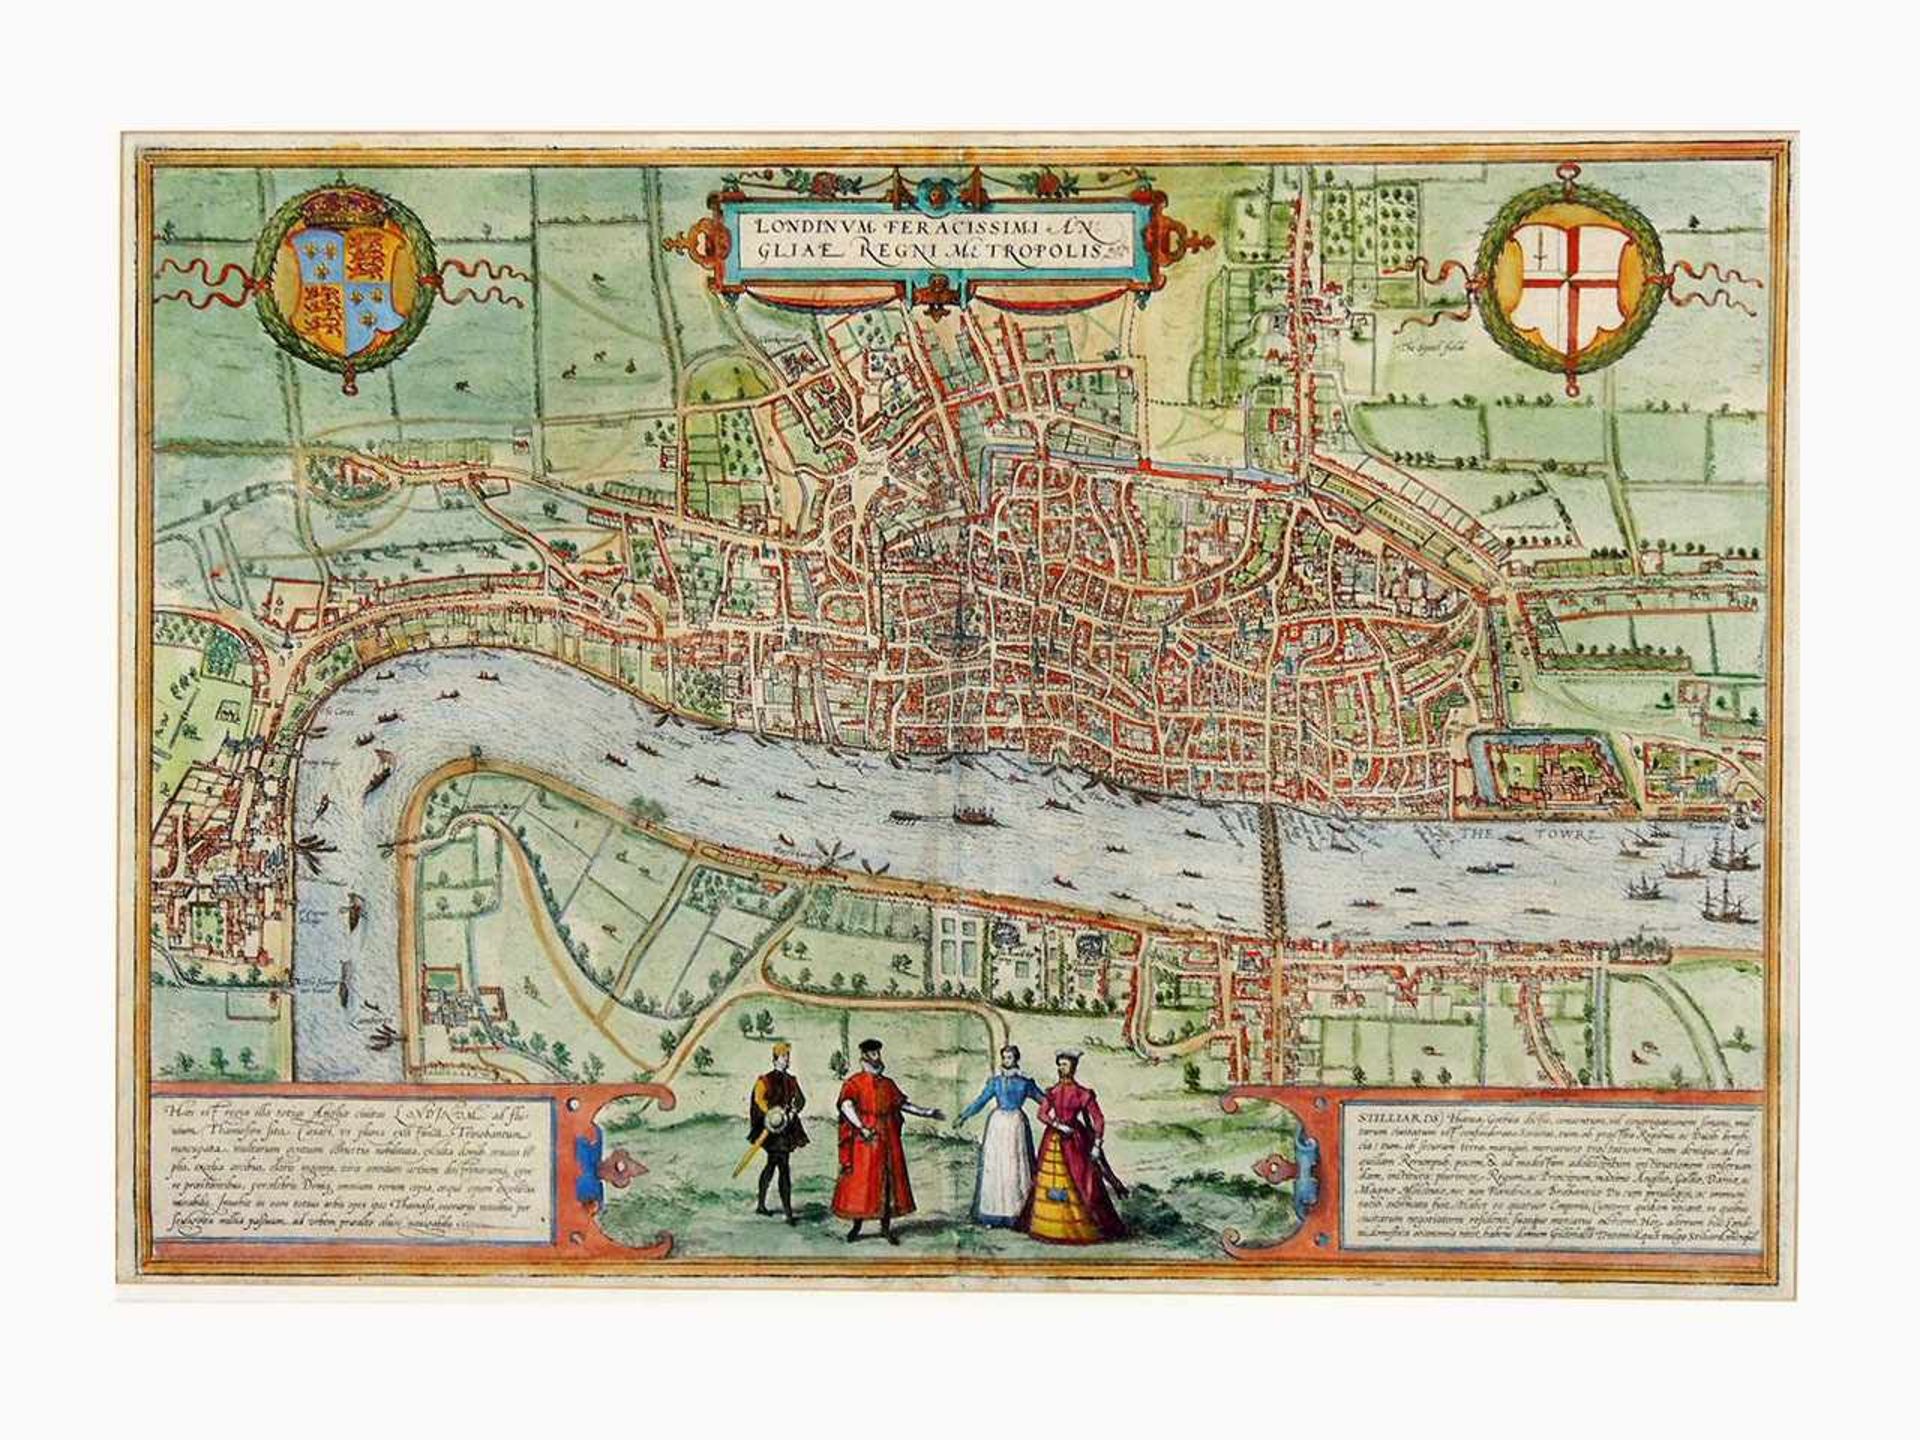 BRAUN/HOGENBERG1572-1618Londinum Feracissimi Angliae Regni MetropolisKupferstich, altkoloriert, 33 x